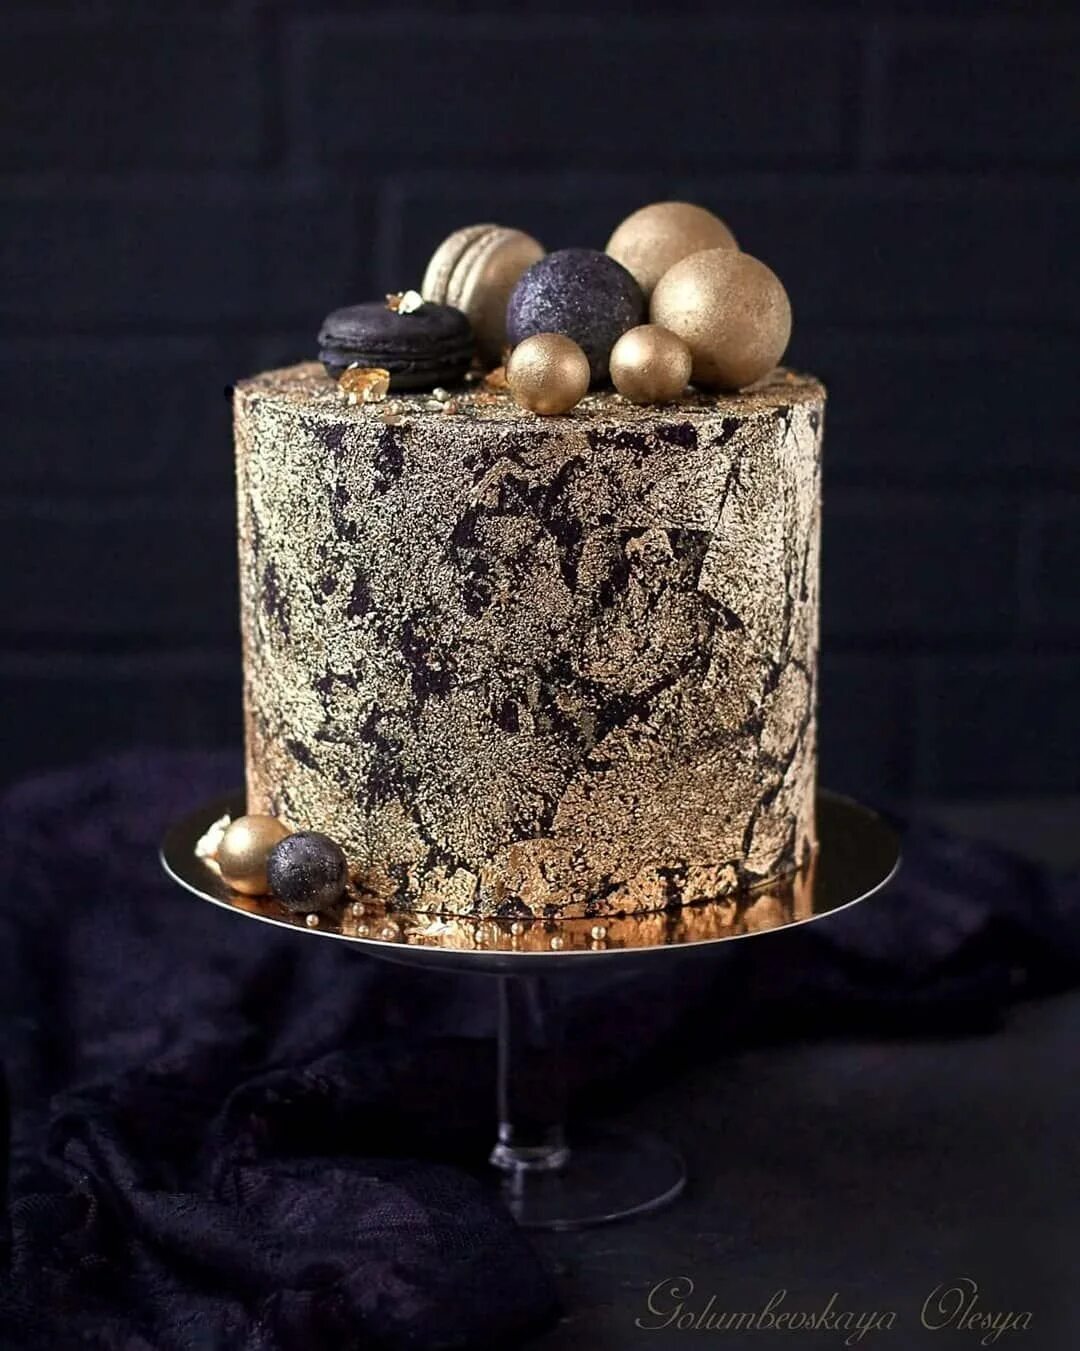 Декор торта с шариками. Украшение торта шоколадными шариками. Торт с щоклладеыми шар ками. Декор торта шоколадными шарами.